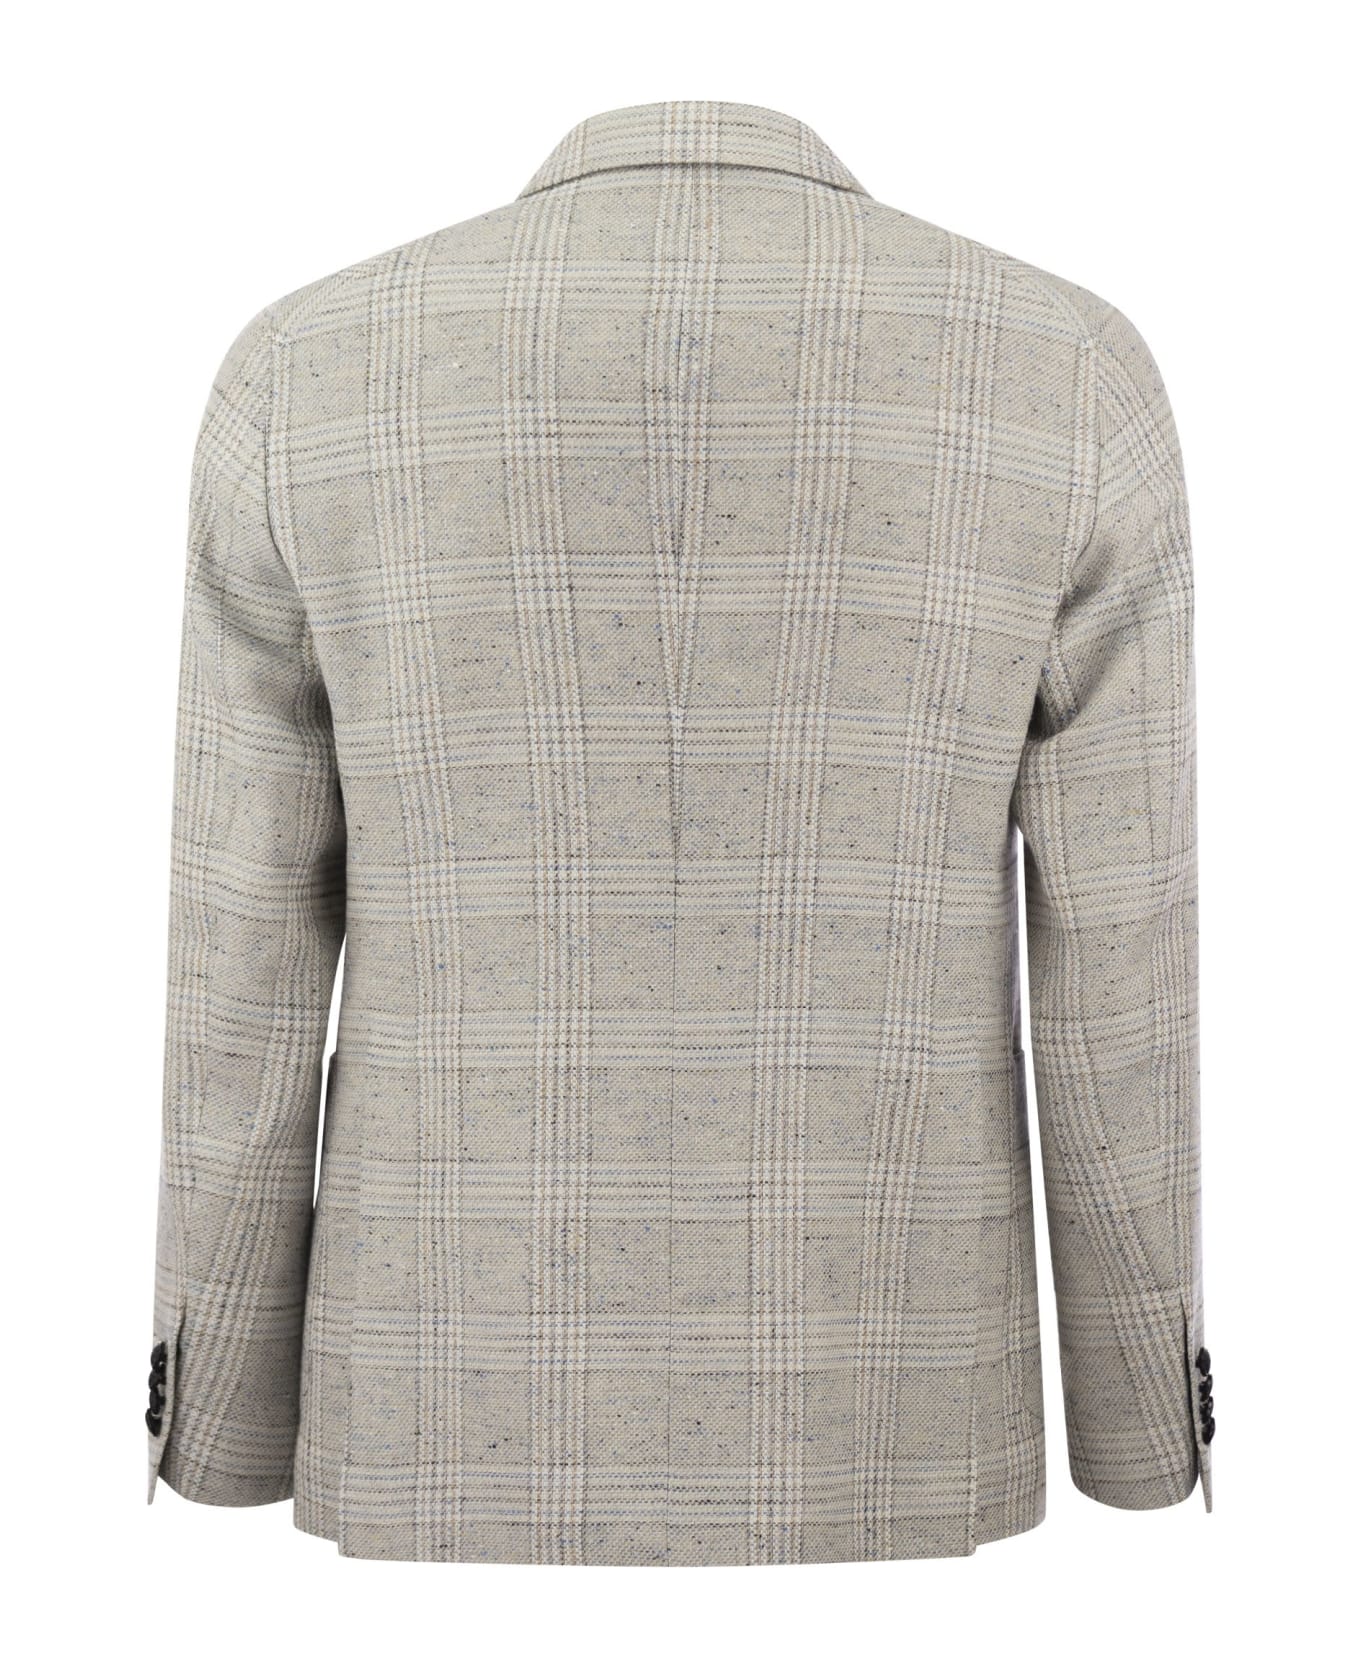 Tagliatore Jacket With Tartan Pattern - Grey